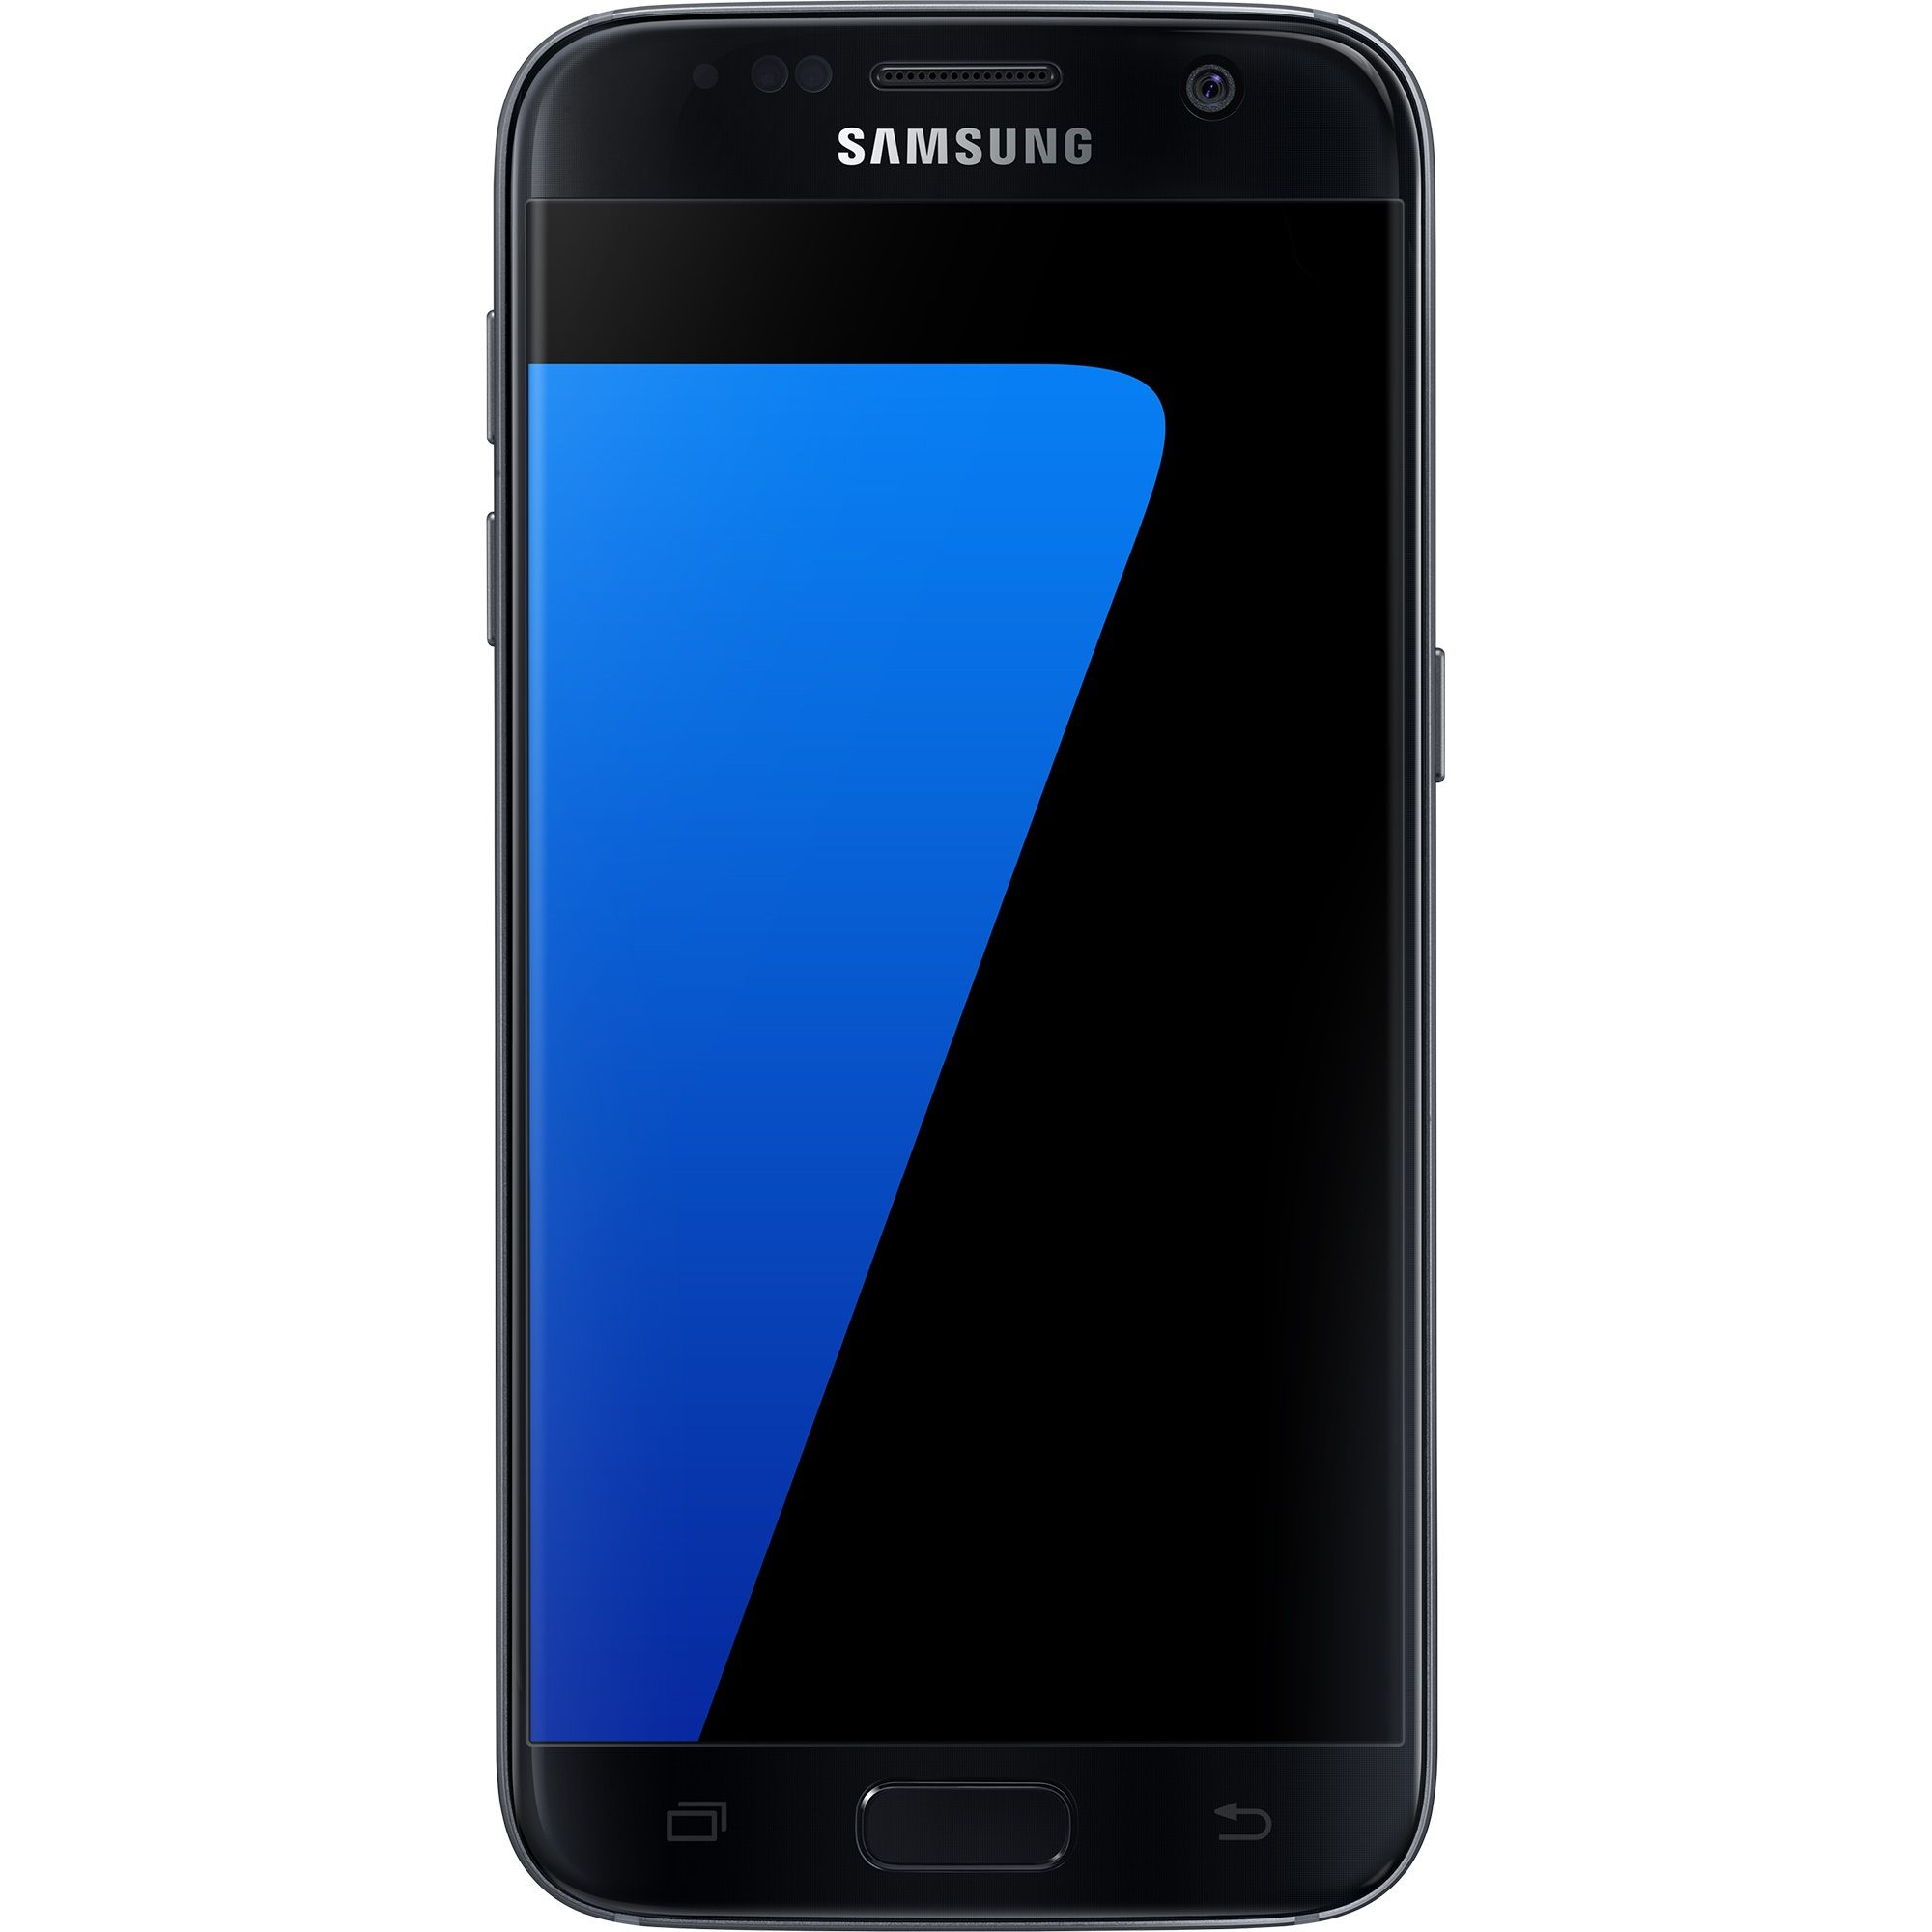 Telefon Mobil Samsung Galaxy S7 G930 32GB Dual SIM 4G Black title=Telefon Mobil Samsung Galaxy S7 G930 32GB Dual SIM 4G Black